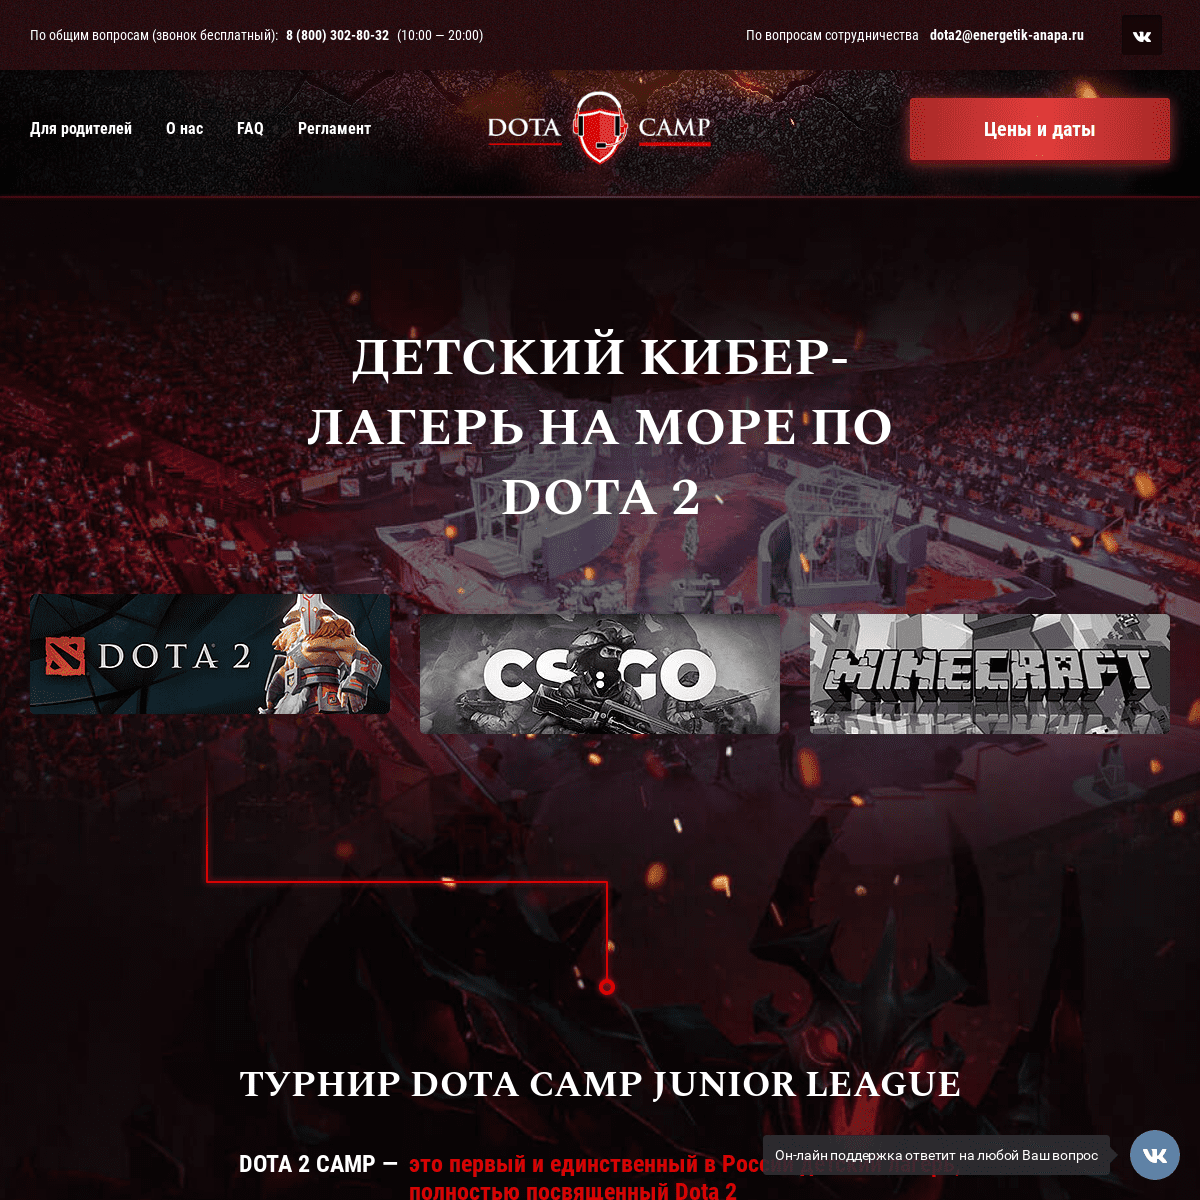 A complete backup of dota2camp.ru